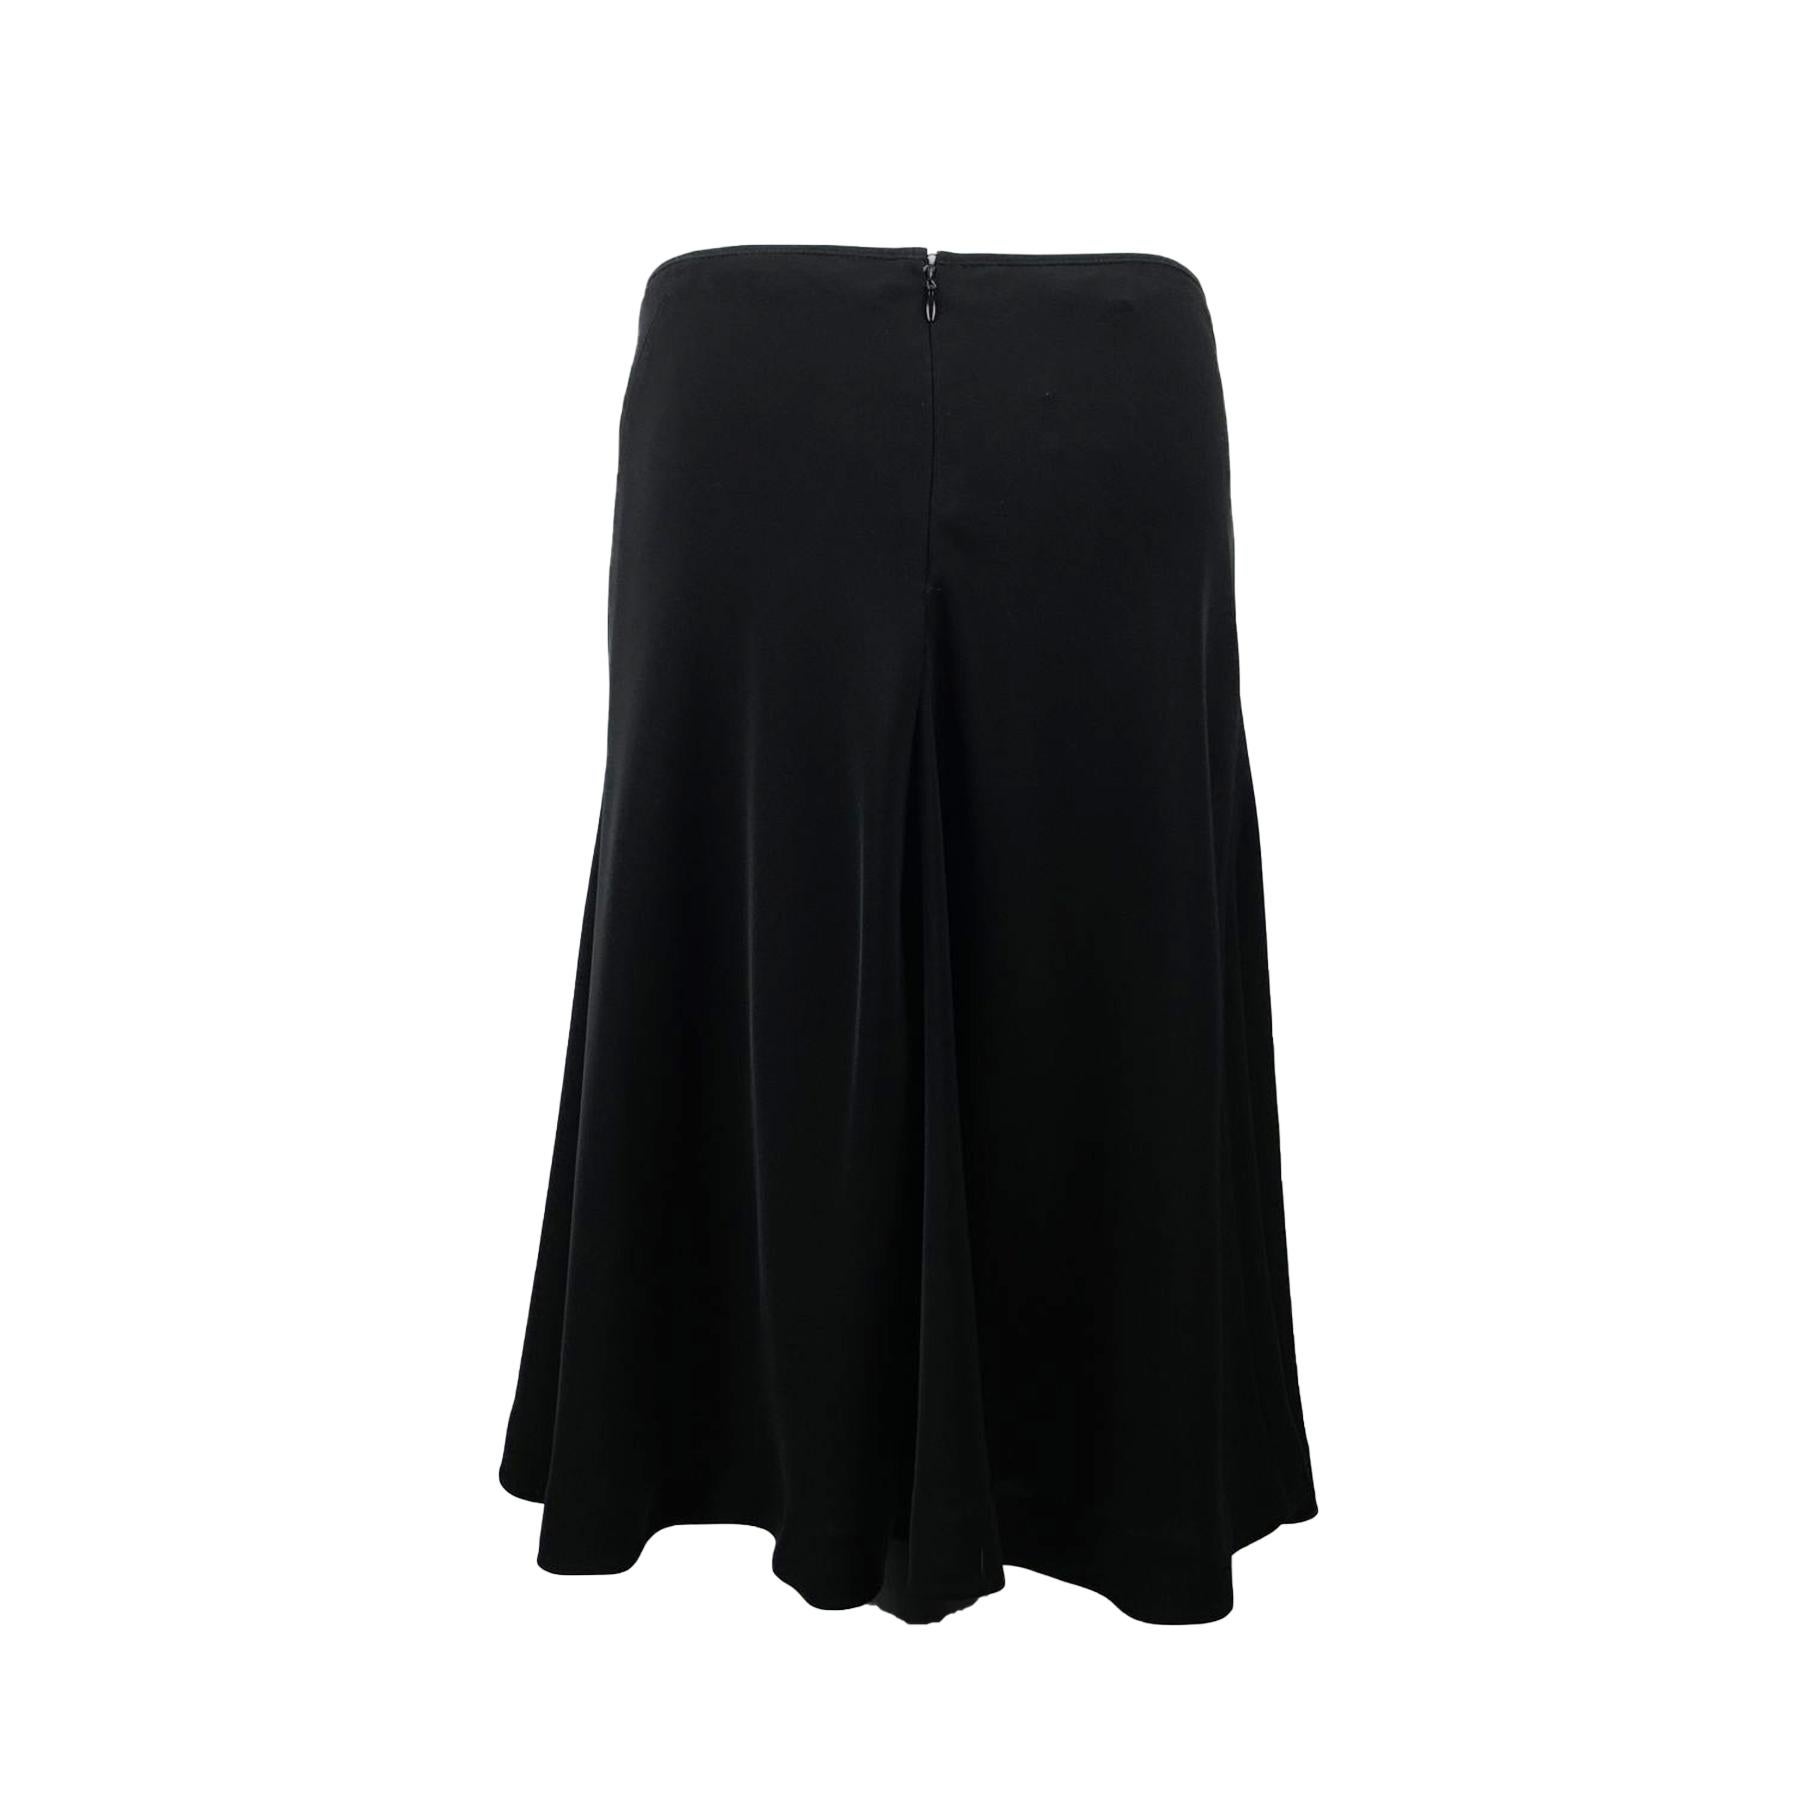 skirt black size 44